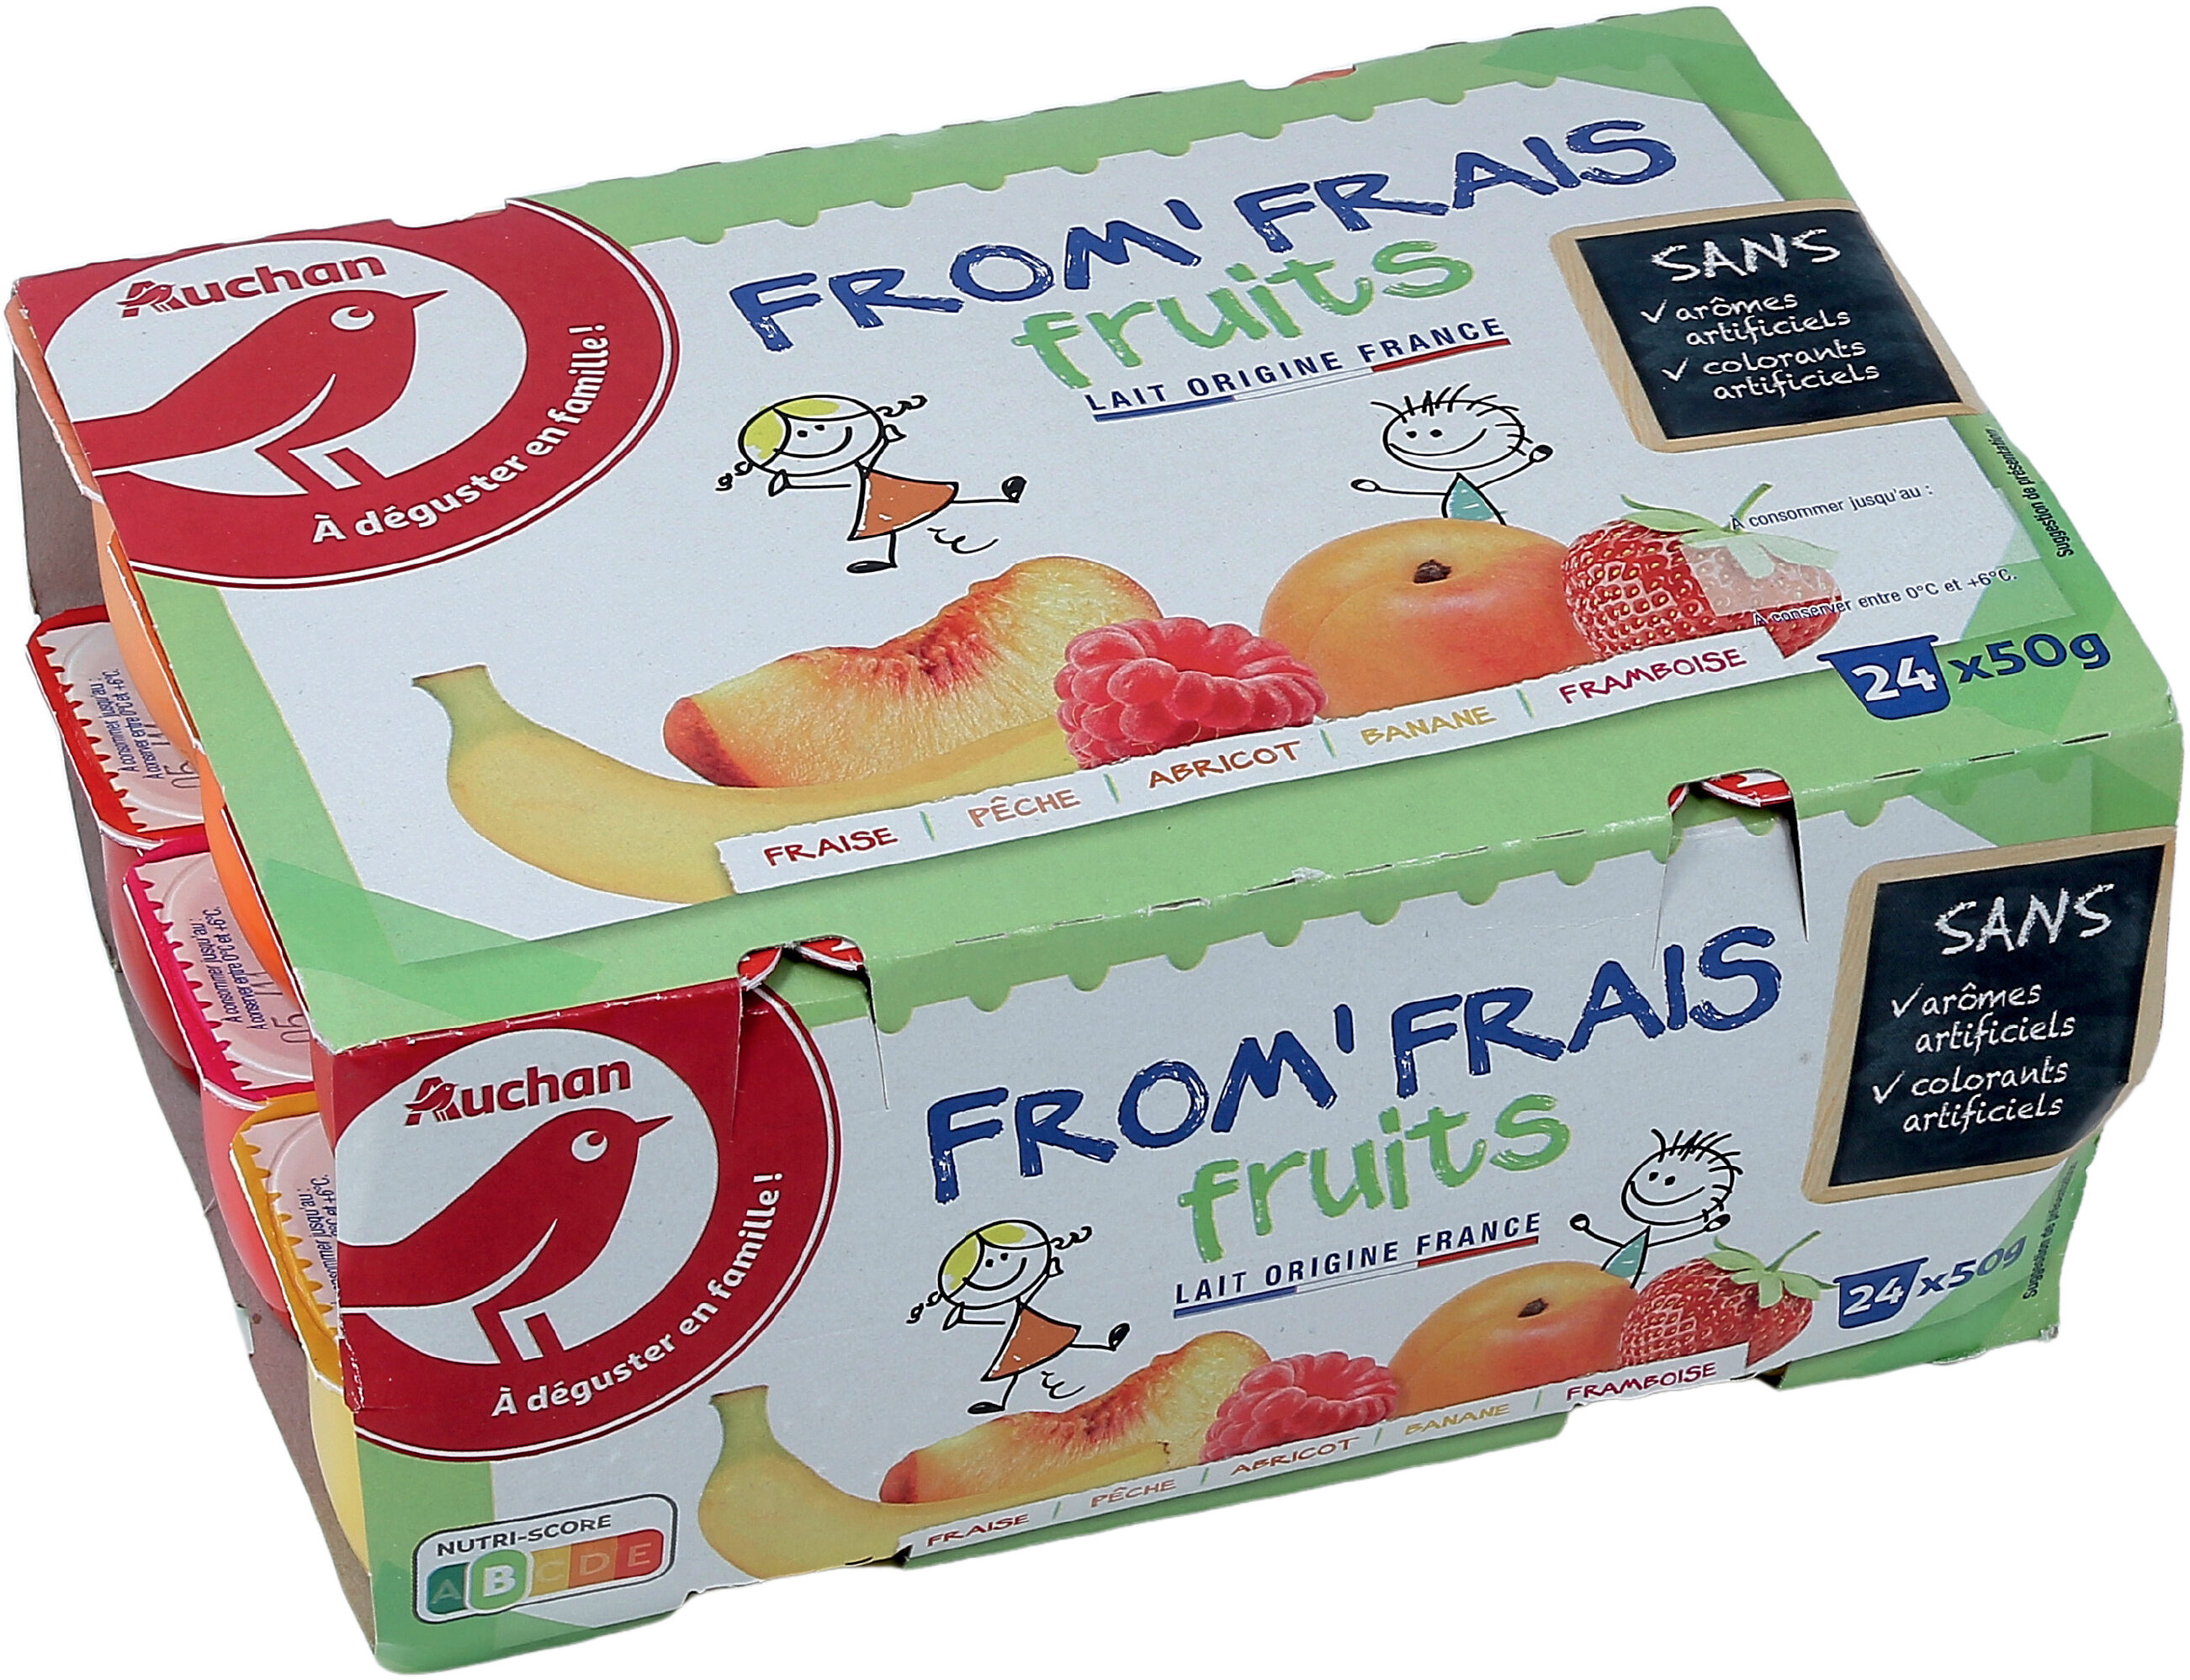 FROM' FRAIS FRUITS SANS arômes artificiels colorants artificiels - Product - fr